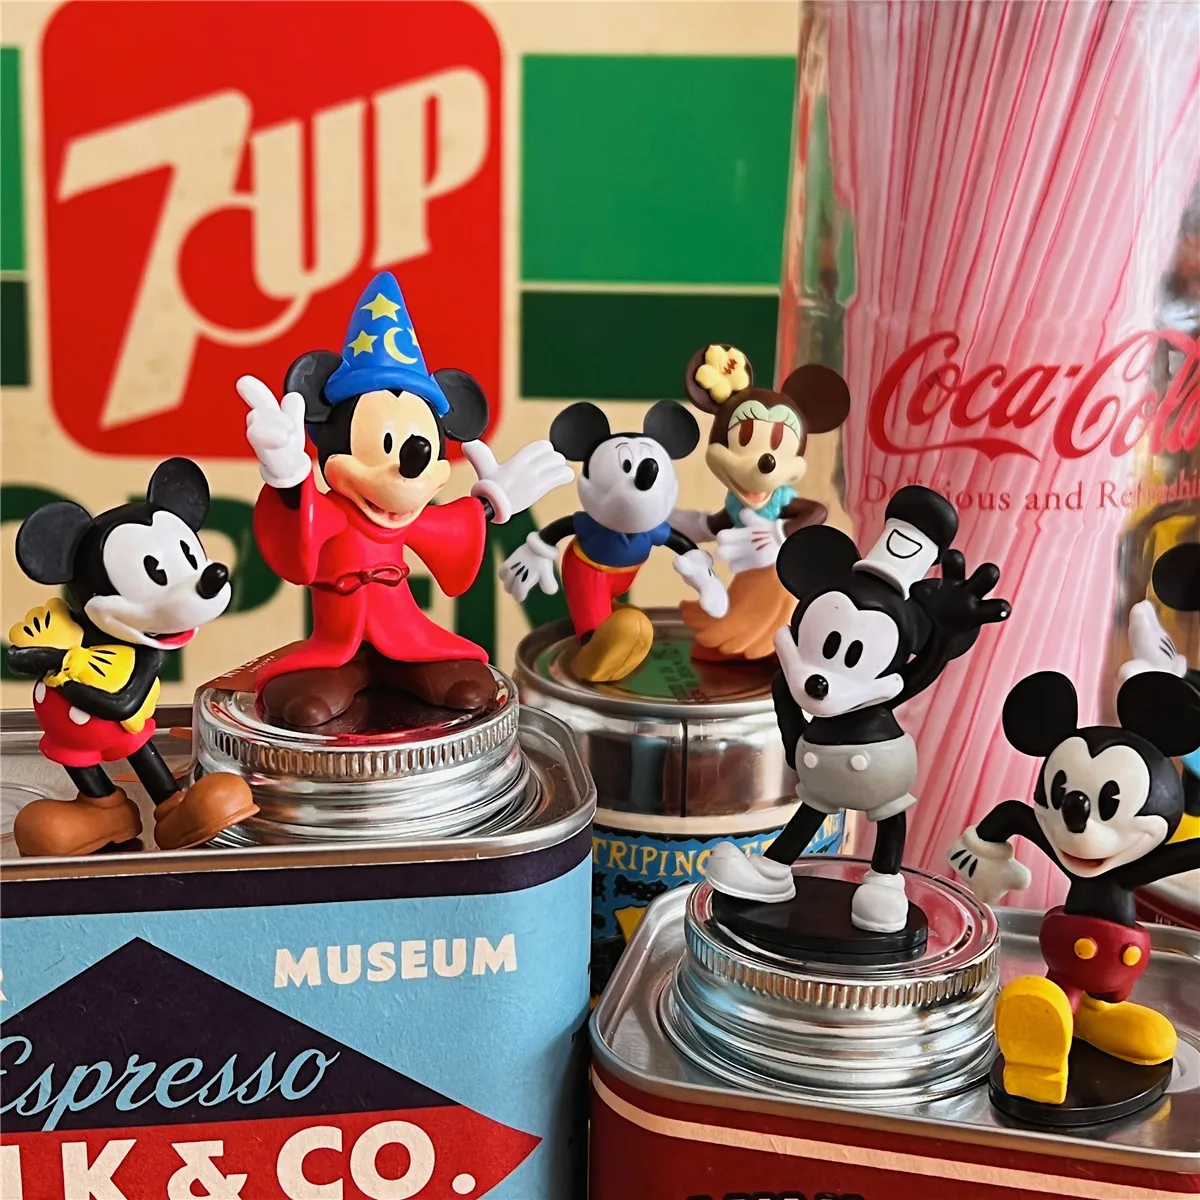 Disney 70th Vintage Mickey Maus Magier Action Figure Dekoration Figur  Spielzeug modell für kinder geschenke - AliExpress